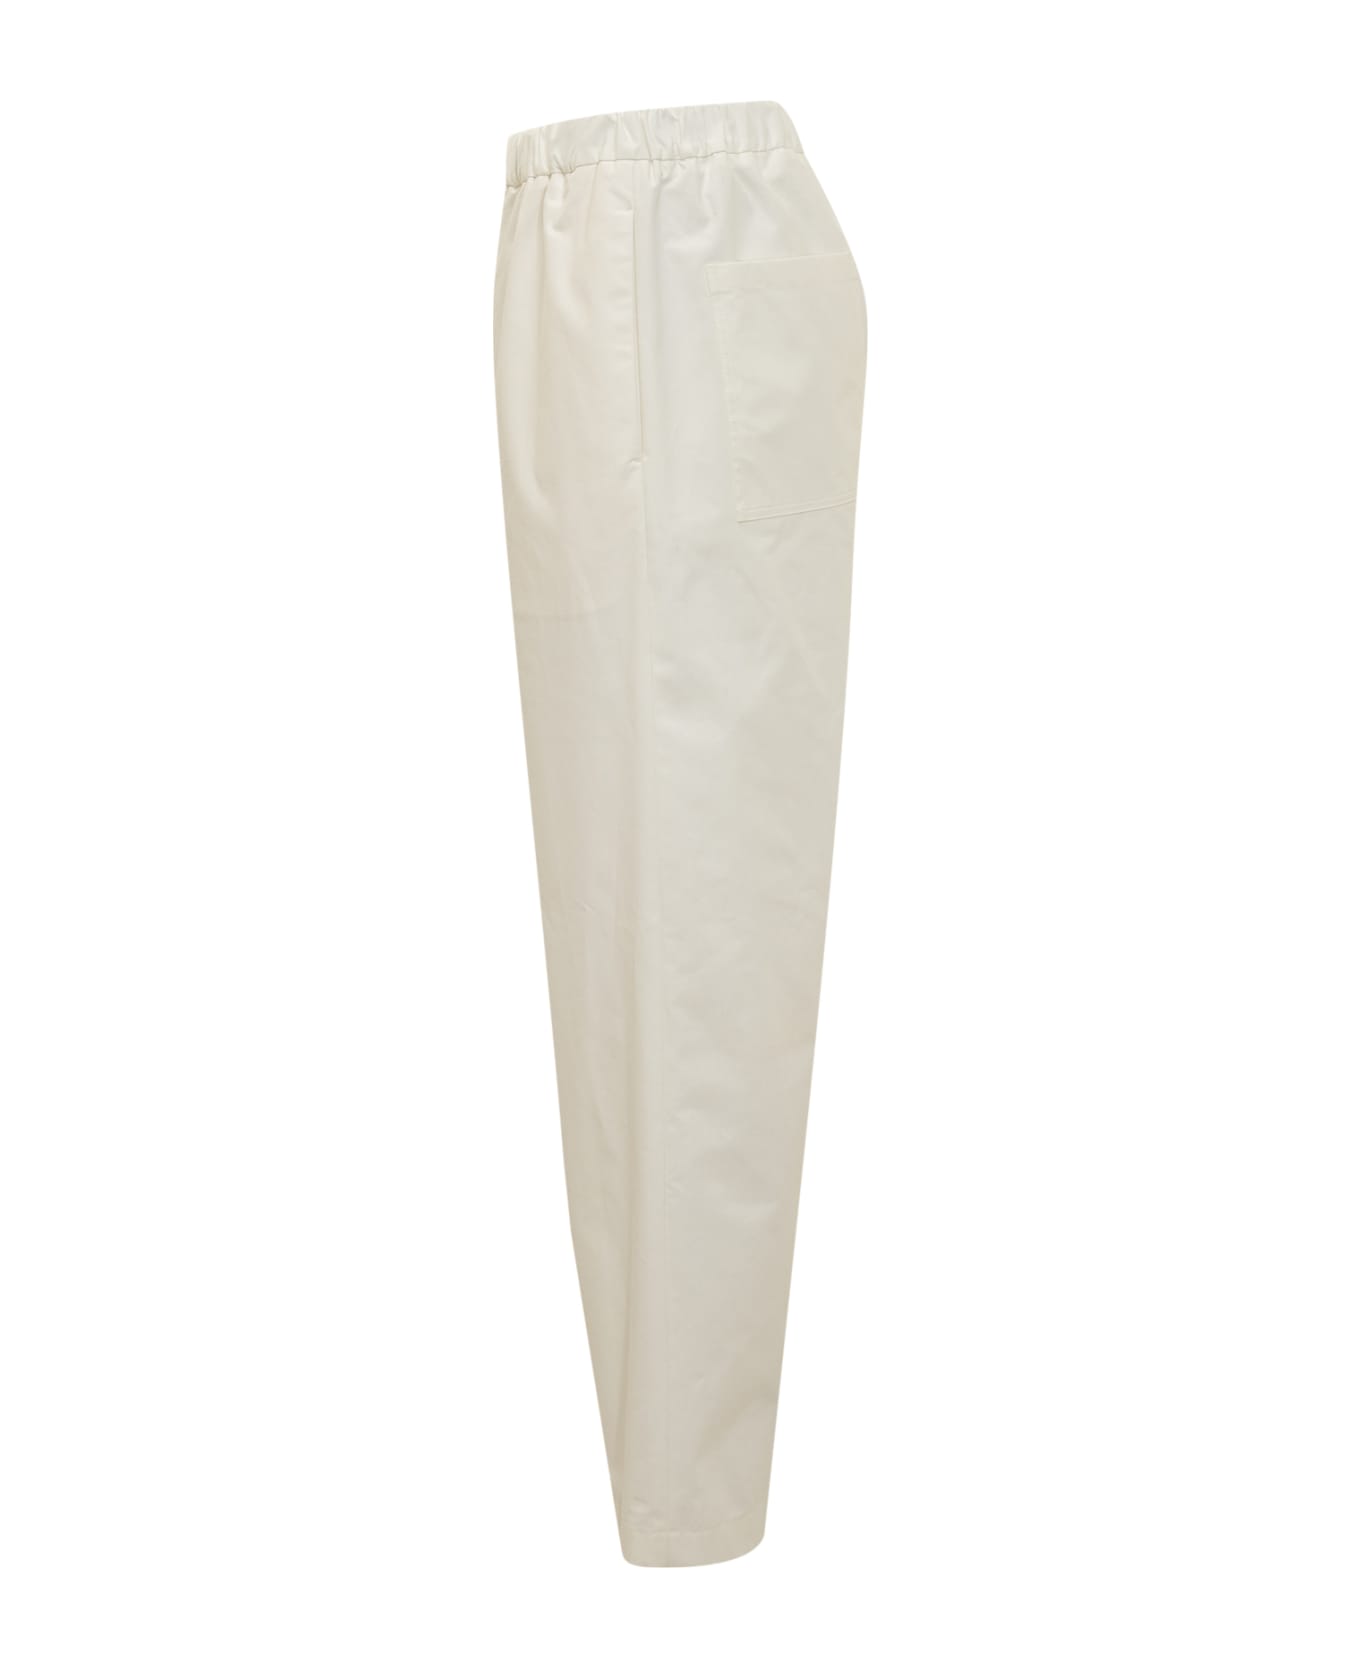 Jil Sander 13 Aw 18.5 Trousers - BEIGE